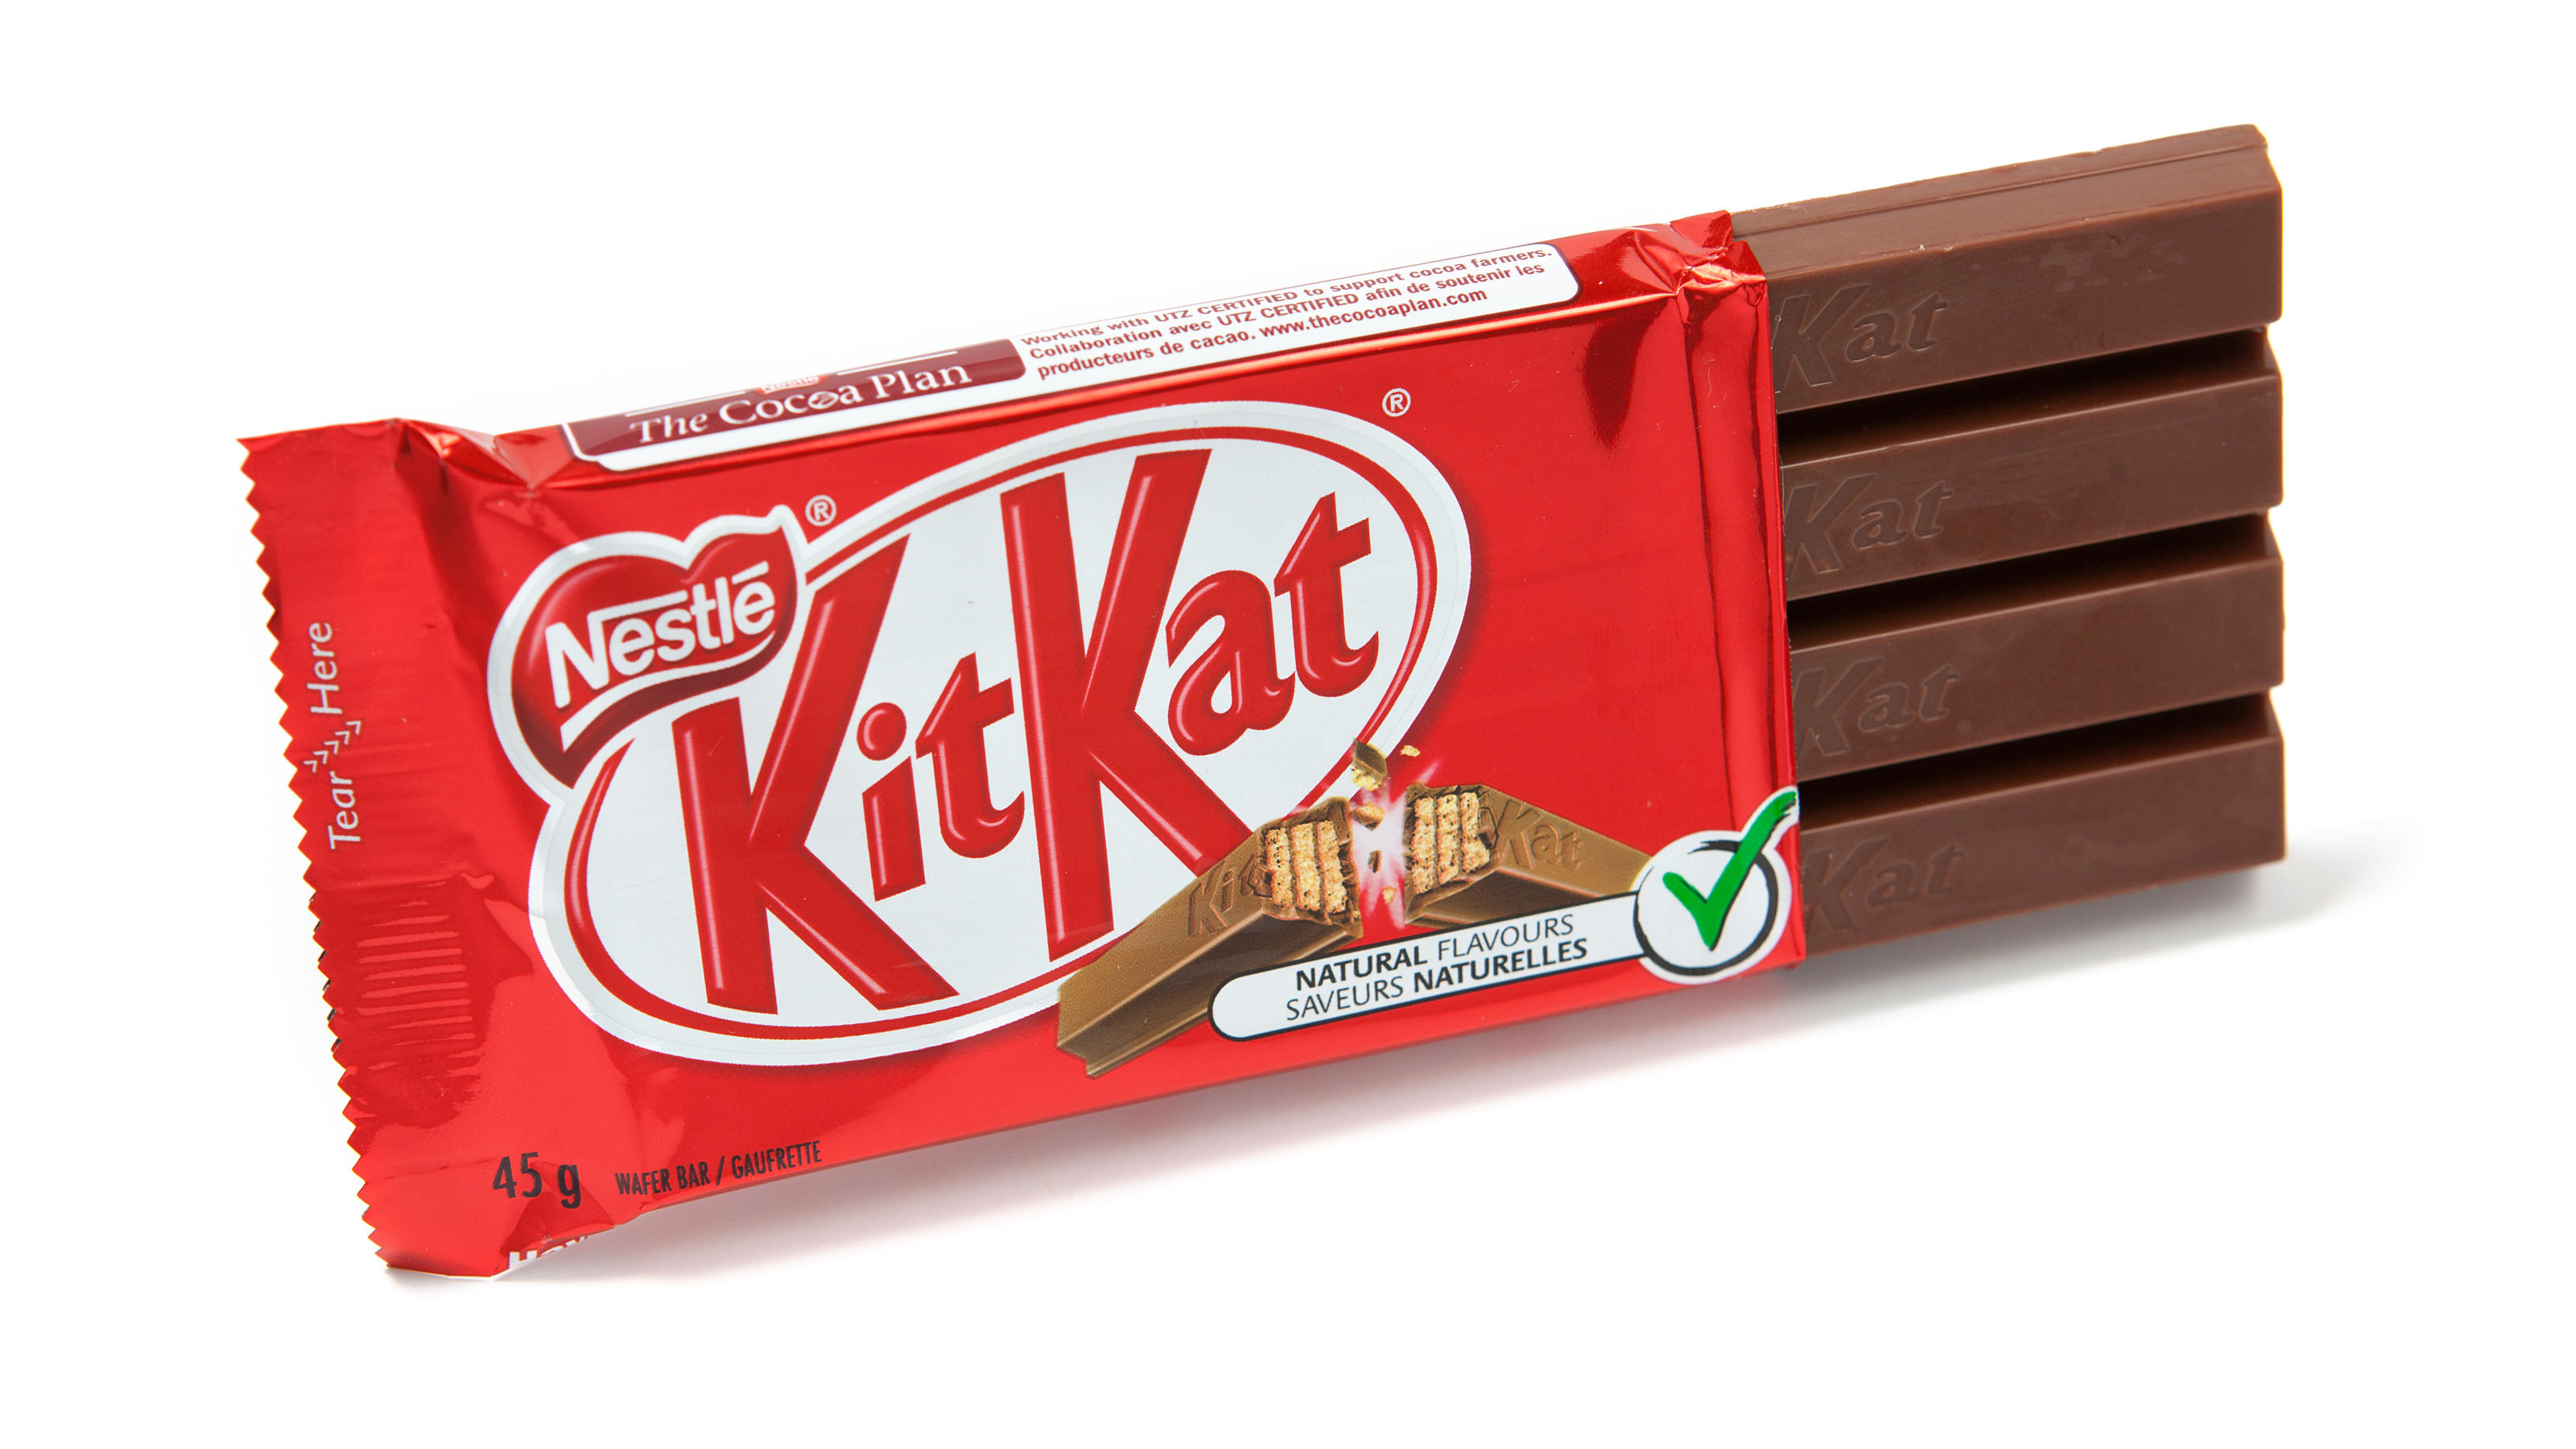 Ein KitKat liegt auf einem weißen Hintergrund.